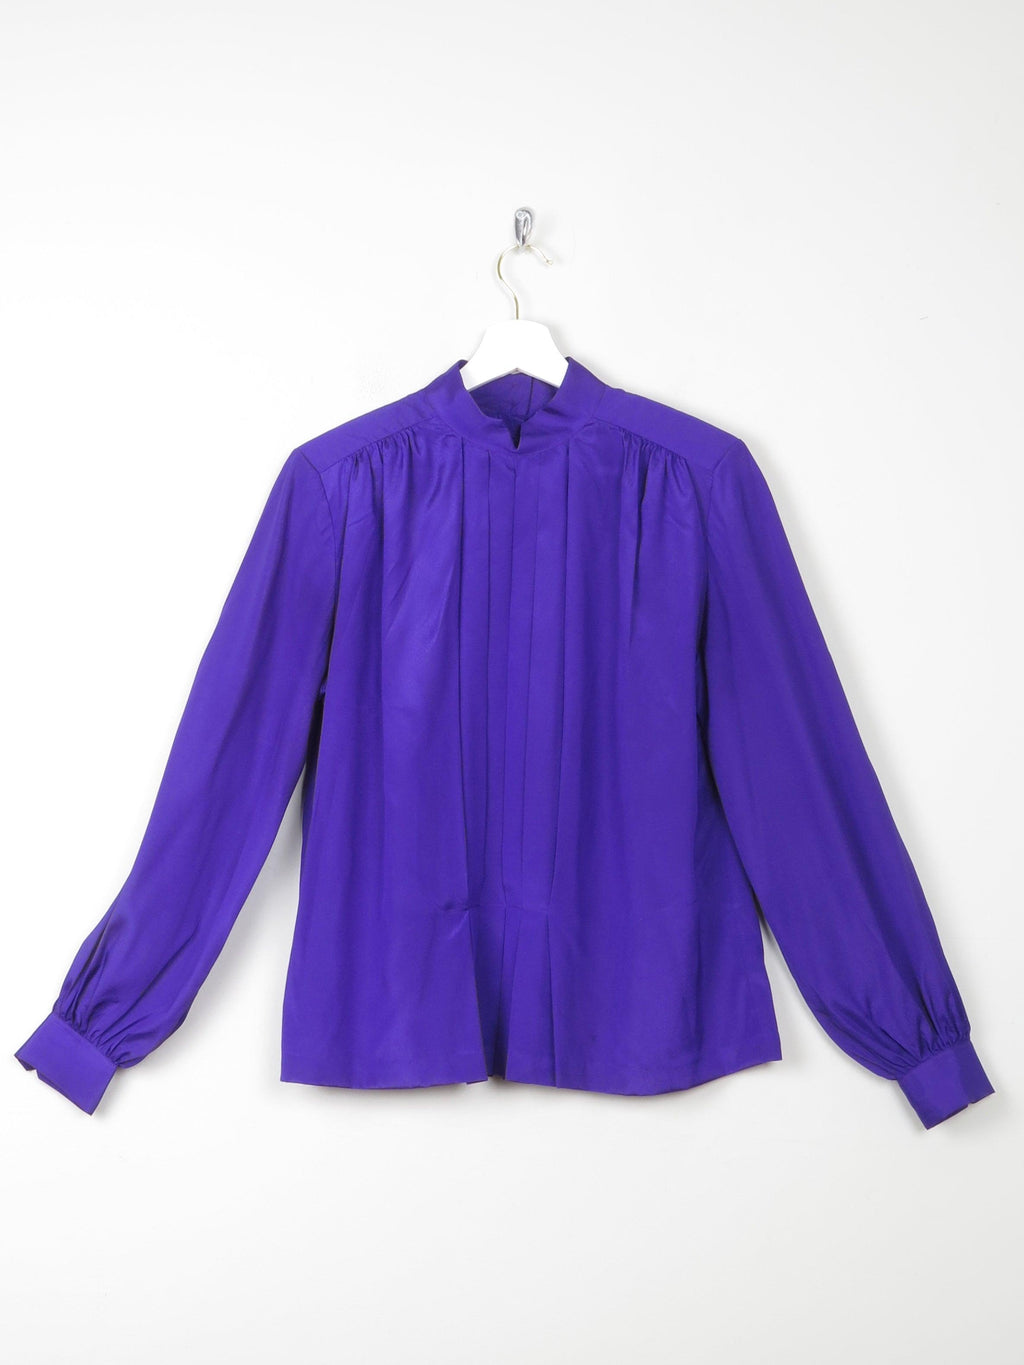 Women’s Liz Claiborne Purple Vintage Blouse M - The Harlequin